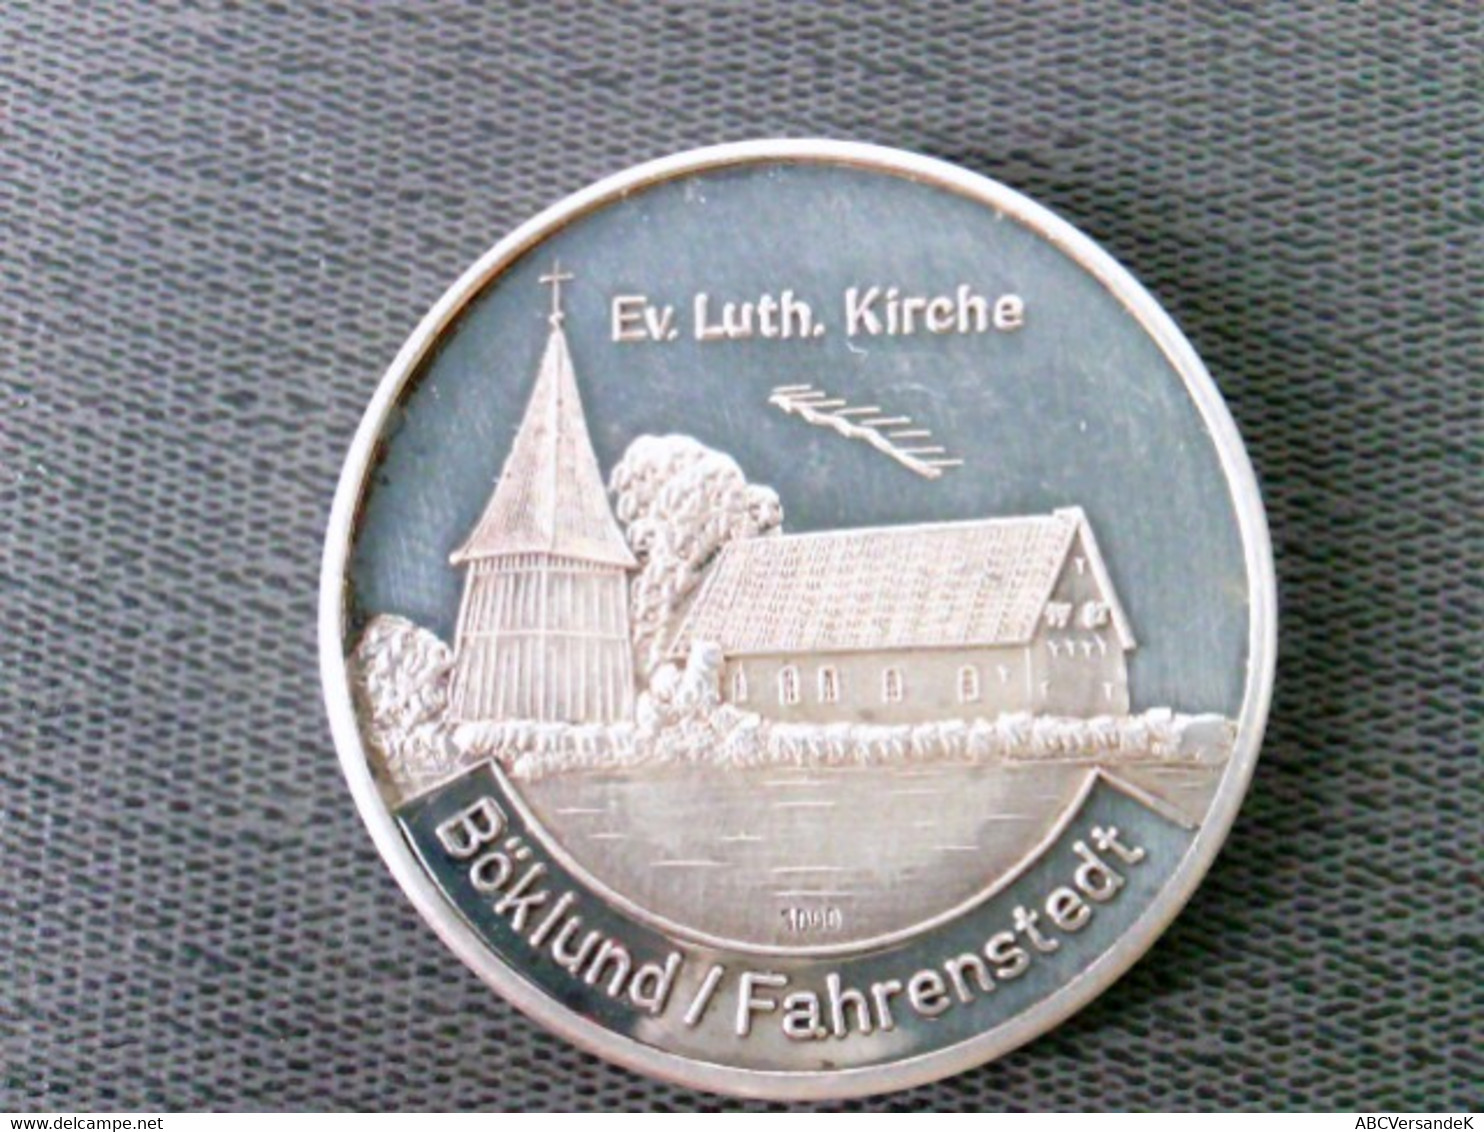 Münze/ Medaille: Ev. Luth. Kirche Böklund/ Fahrenstedt/ 1982 Gemeinde Böklund, Silber 1000 - Numismatique